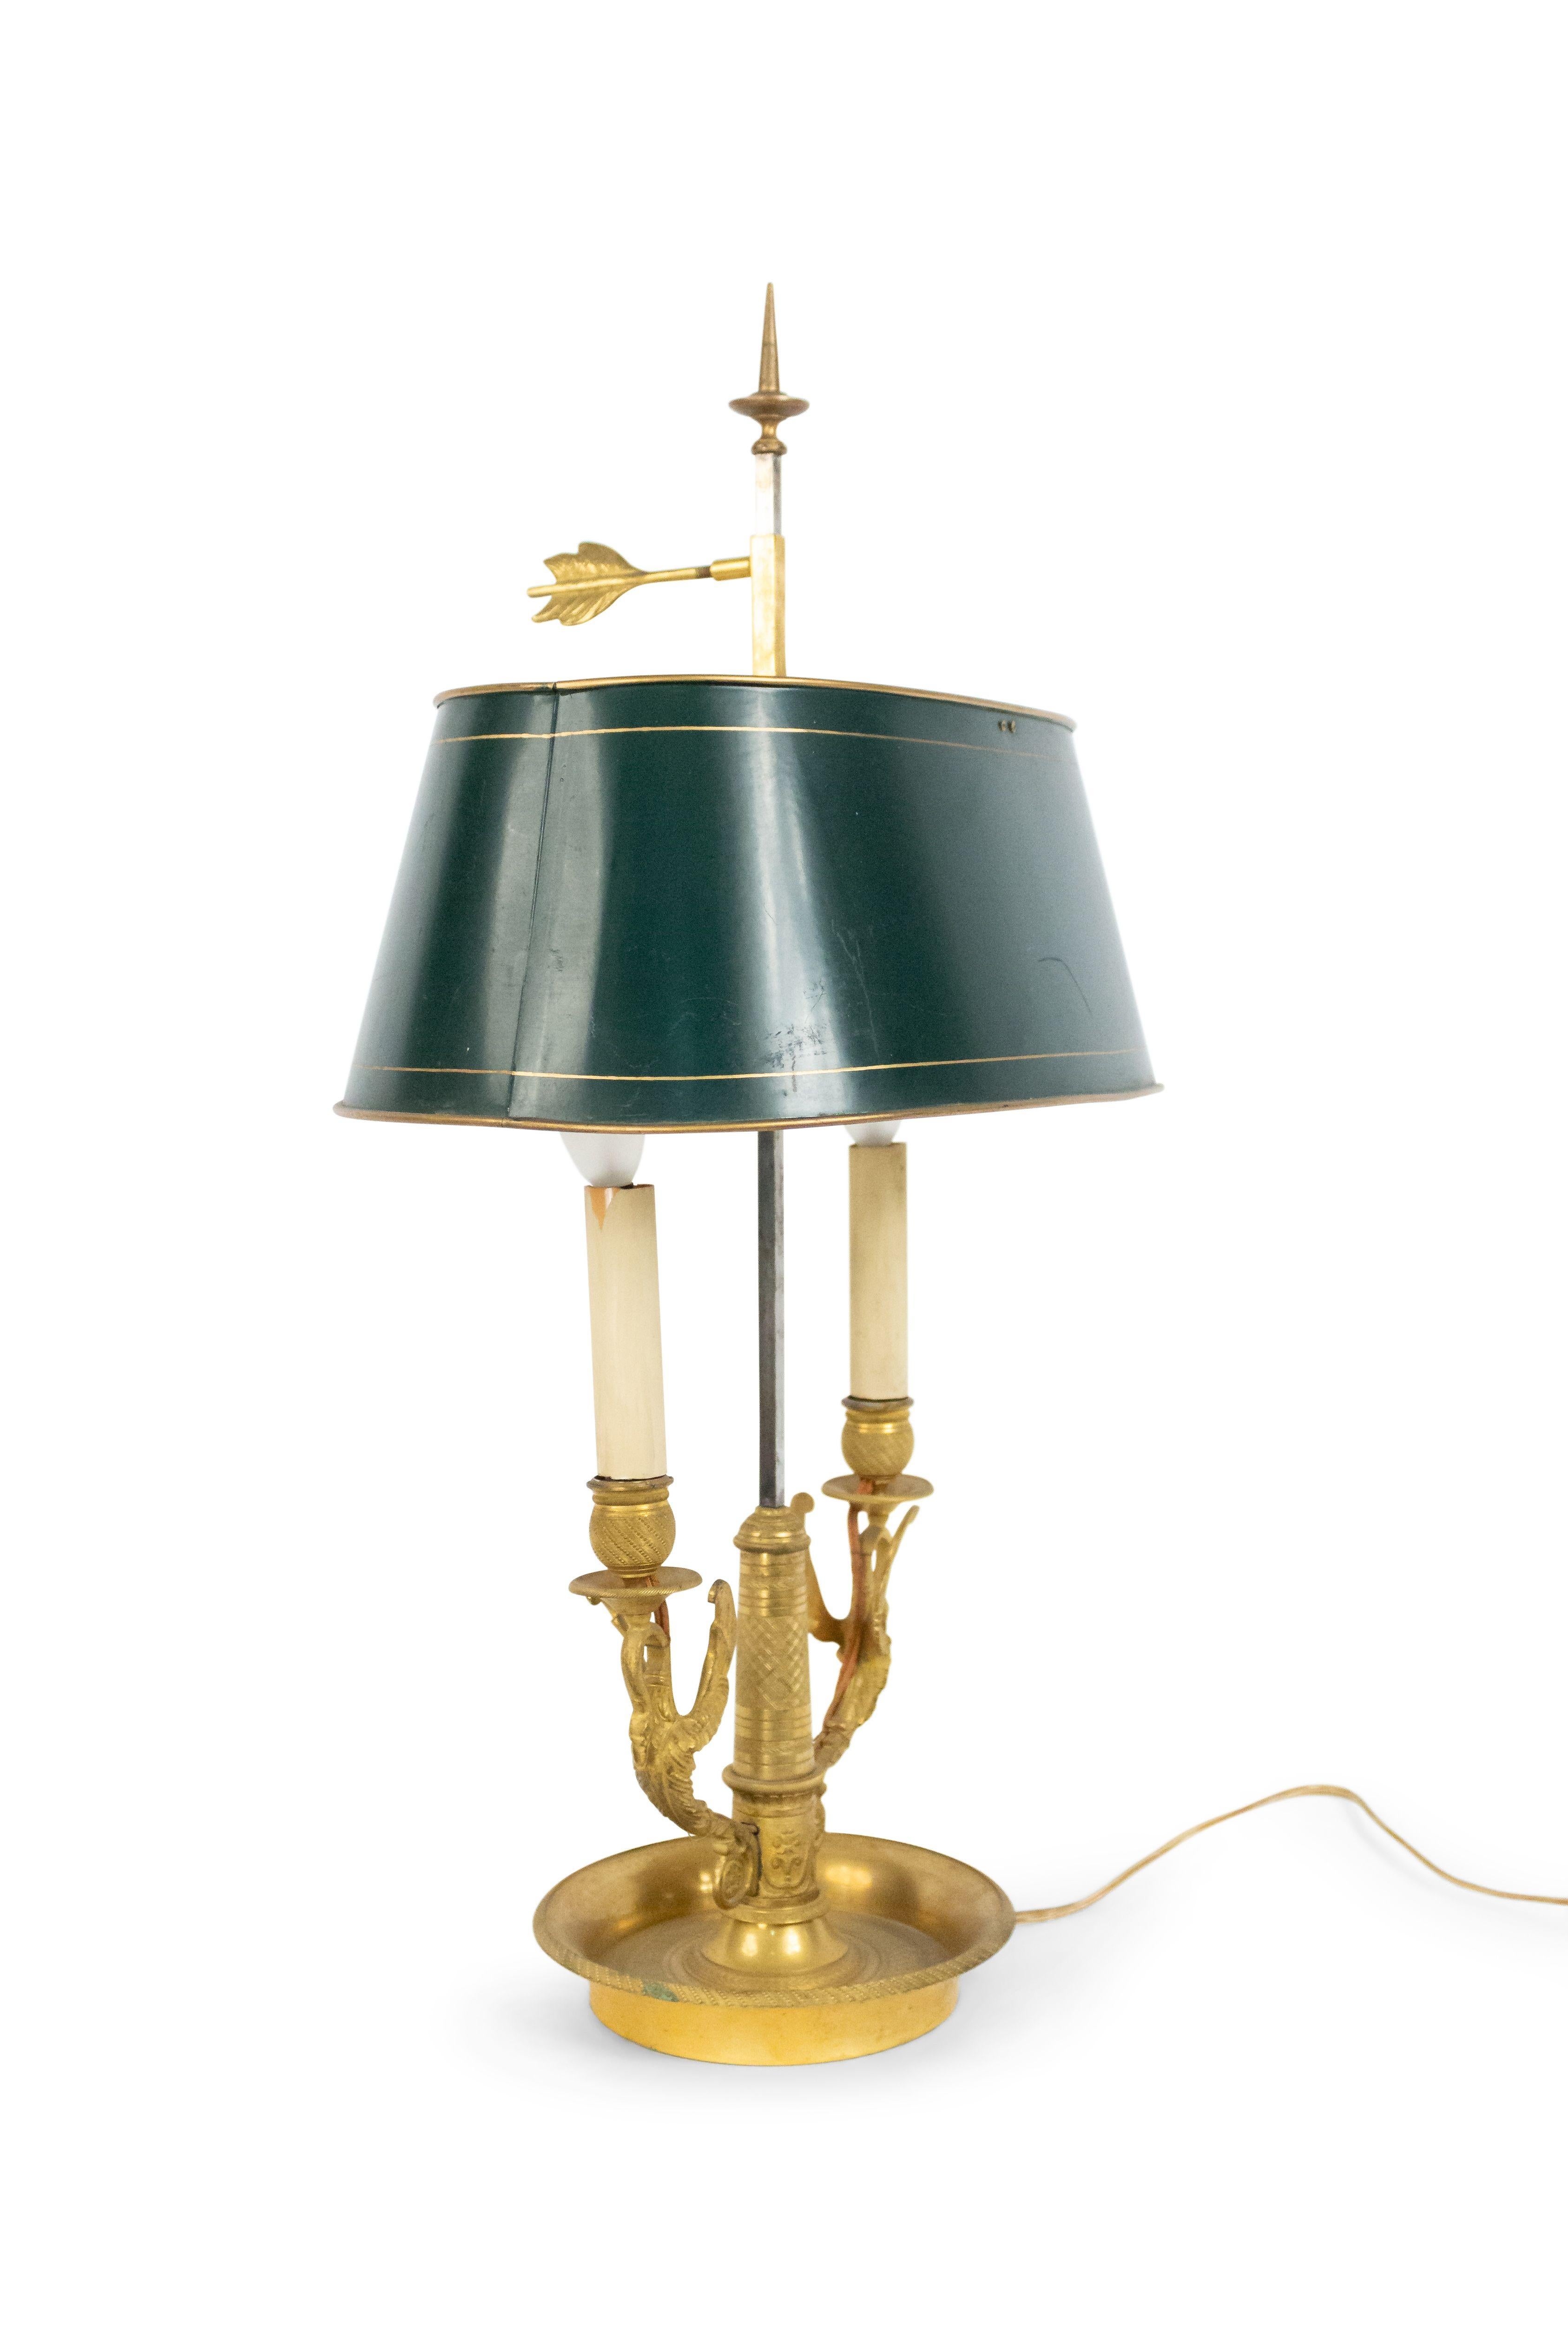 Lampe de table bouillotte de style Empire français du 20ème siècle à 2 bras de cygne en bronze doré et base ronde avec abat-jour ovale en tole vert.